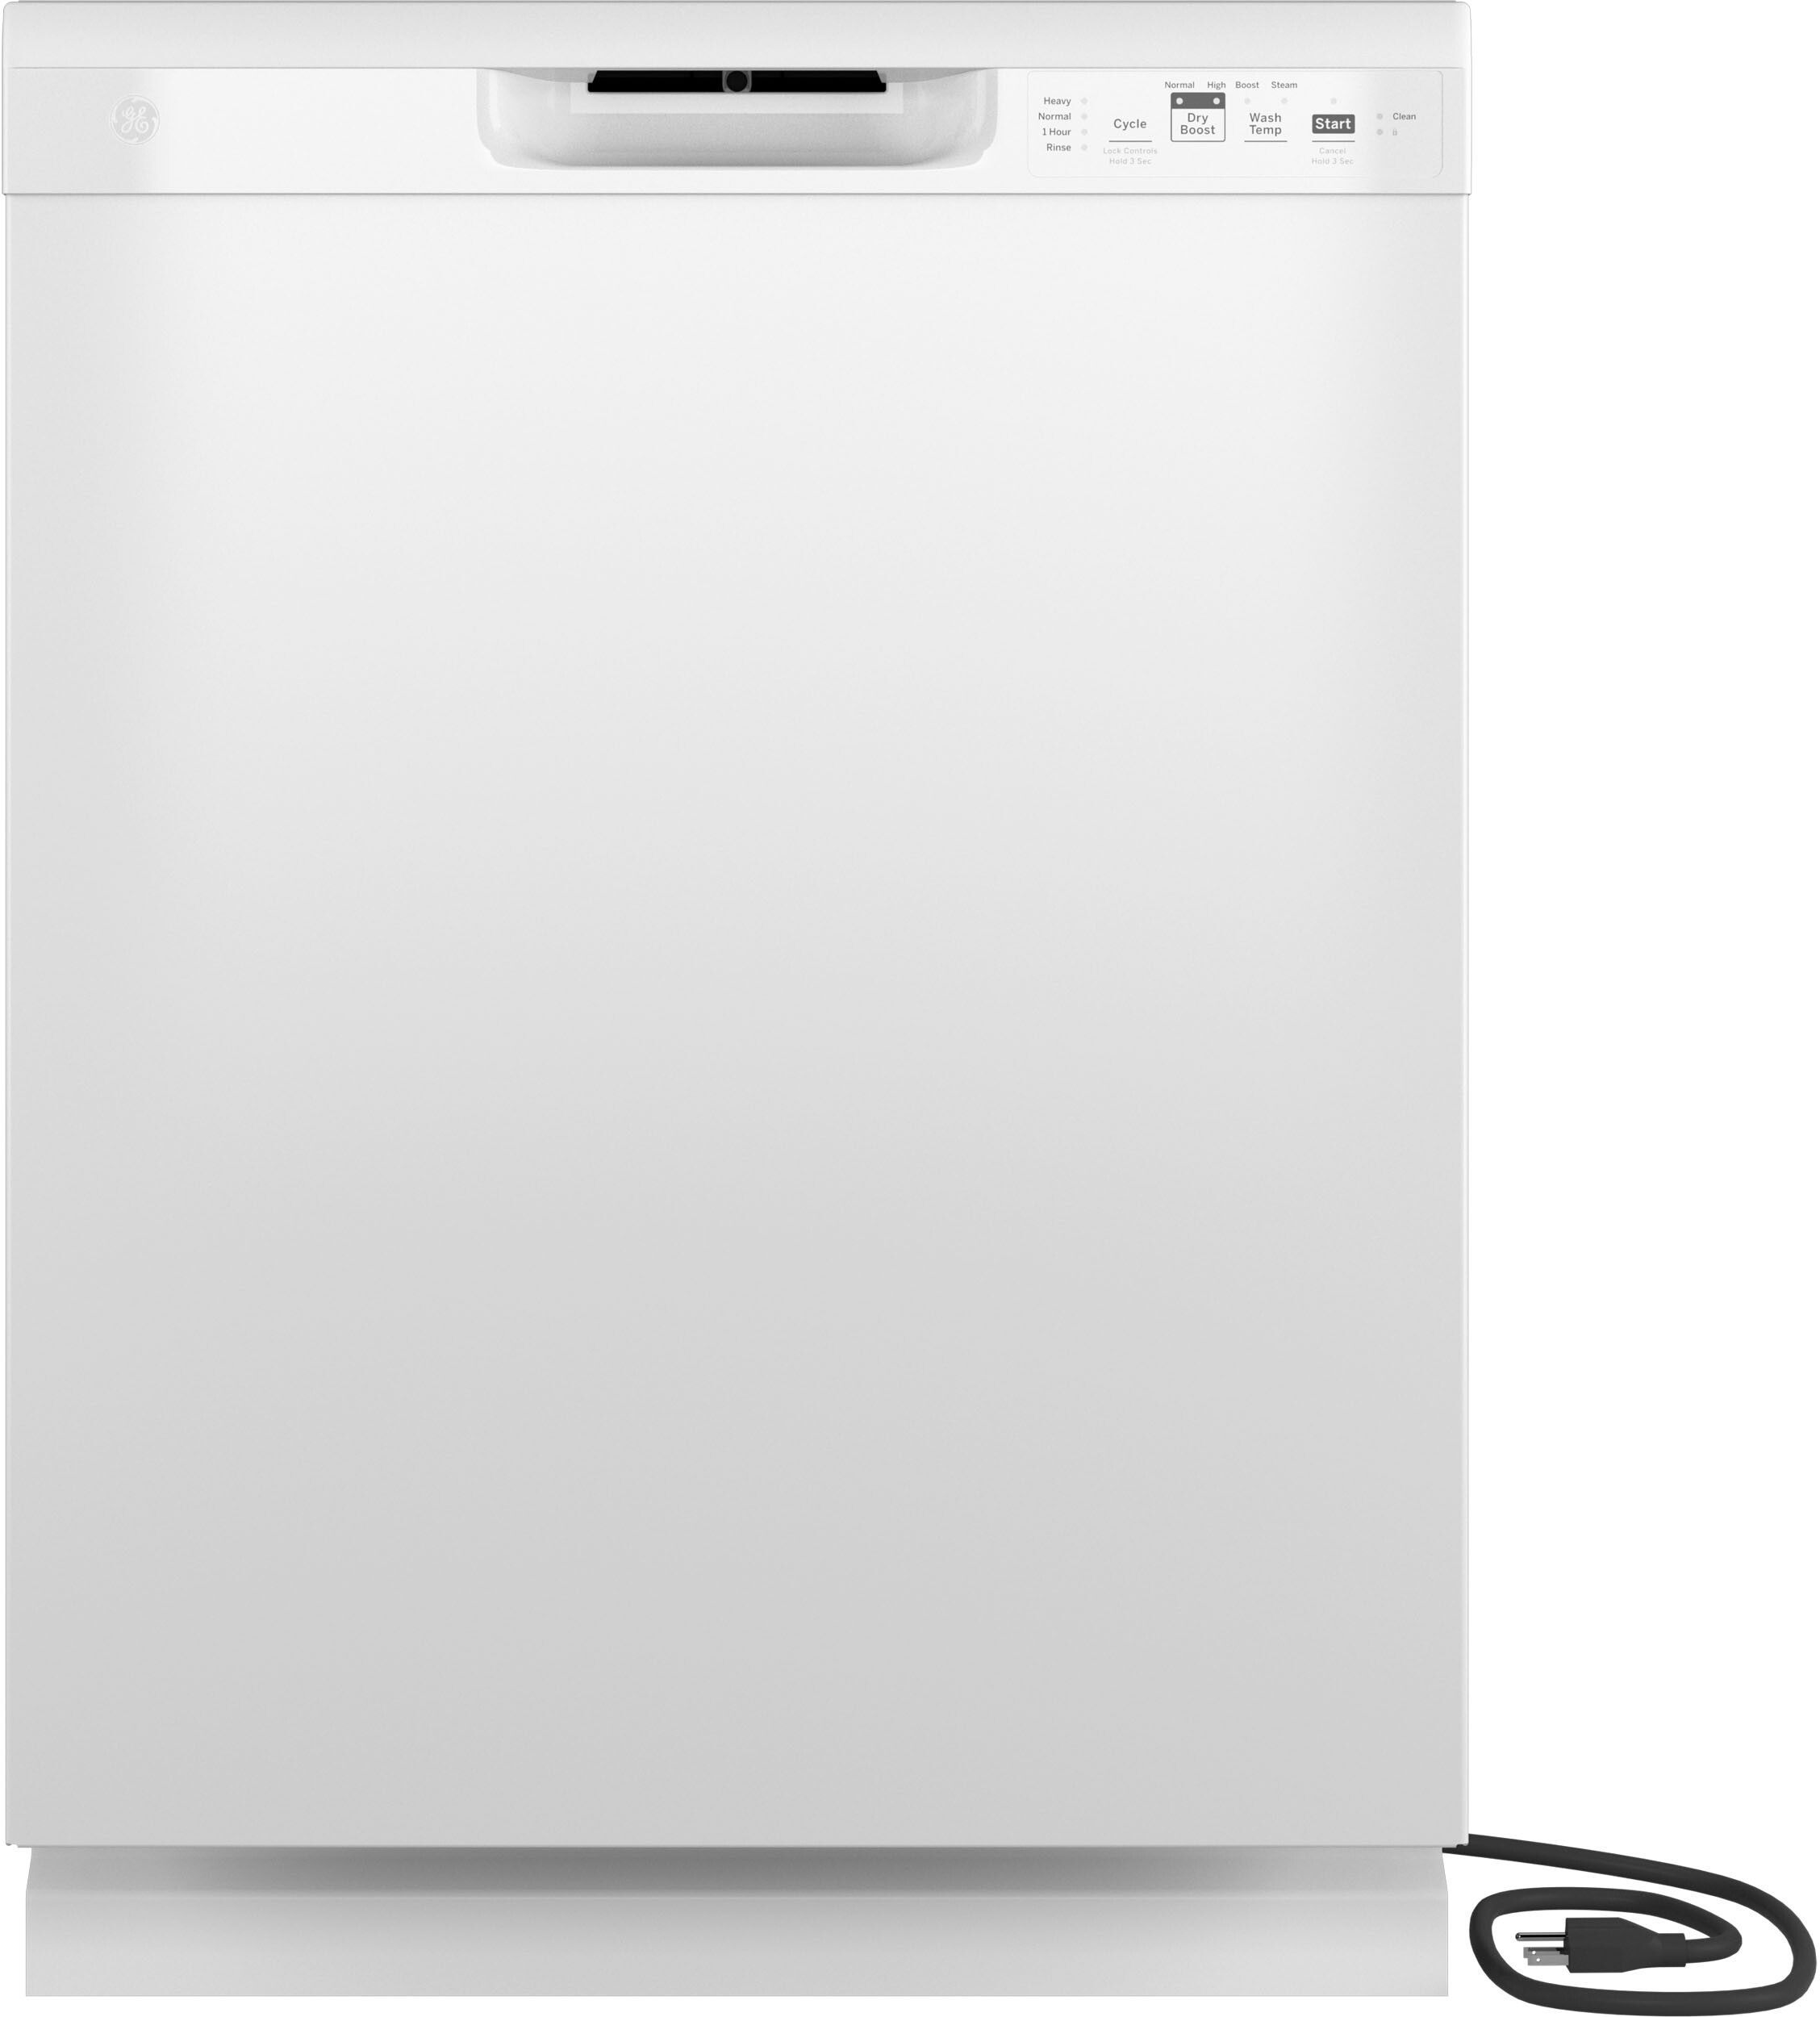 24"" Full Console Tall-Tub Dishwasher - GE GDF511PGRWW